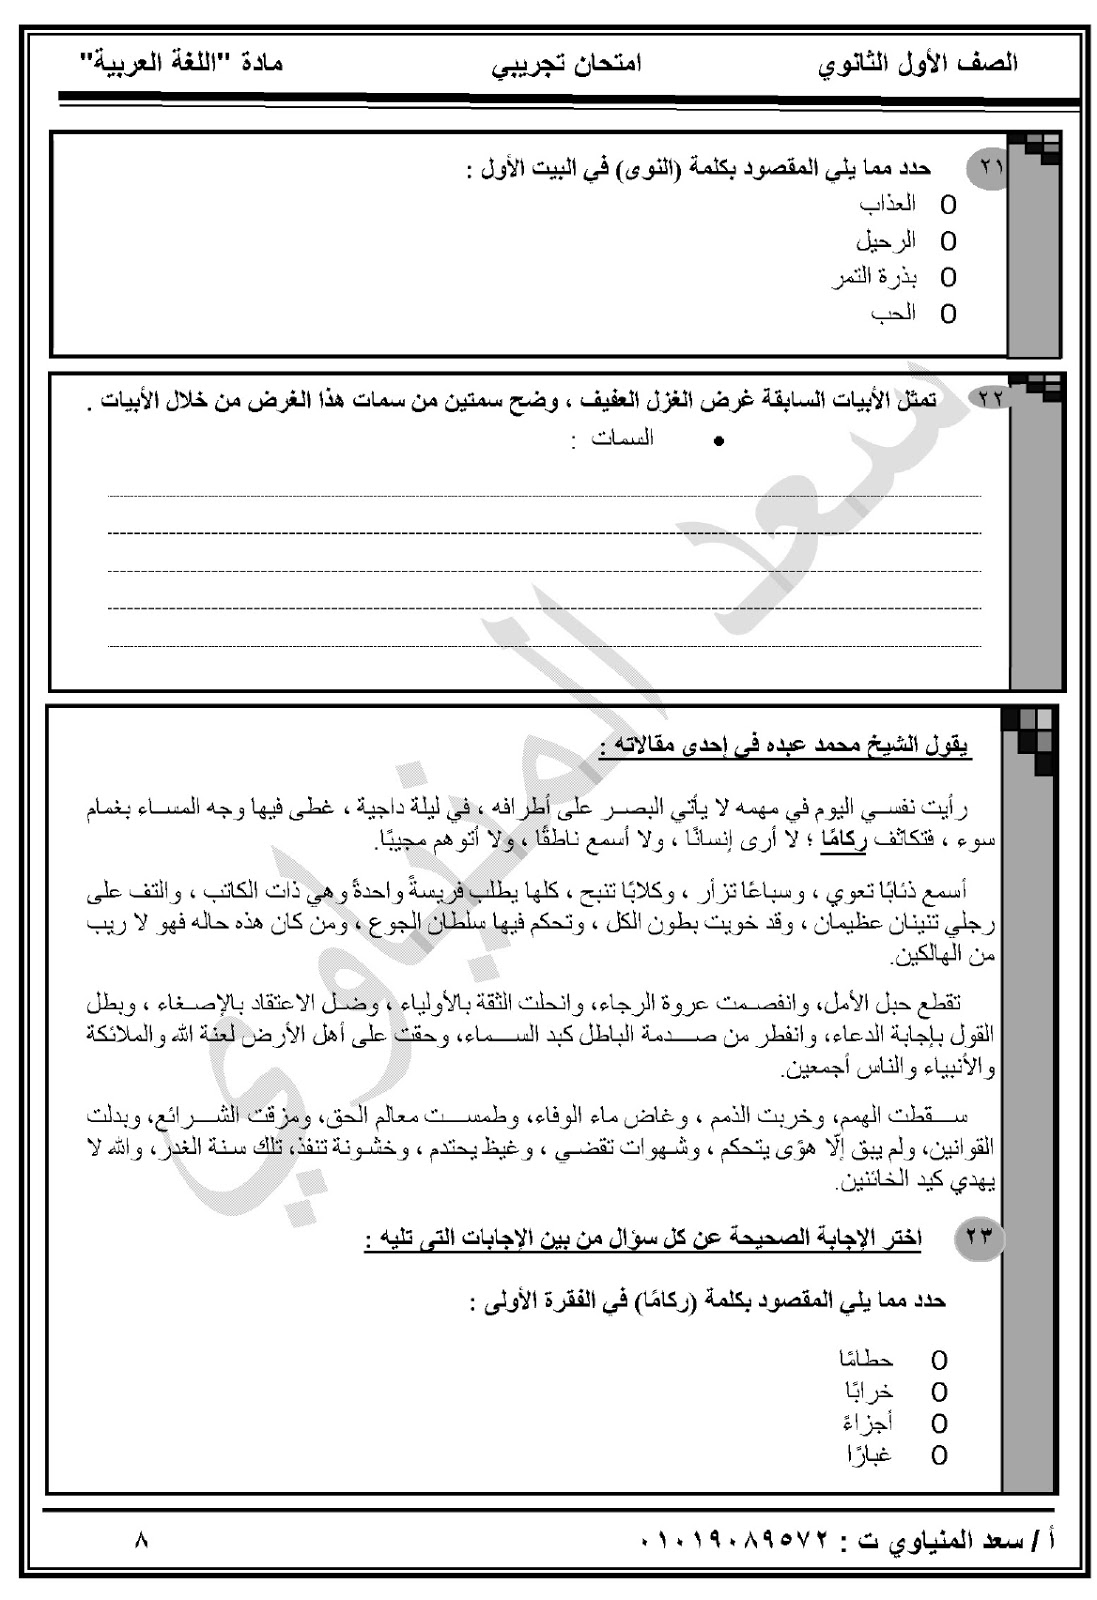 تسريب امتحان اللغة العربية للصف الاول الثانوى مايو 2019